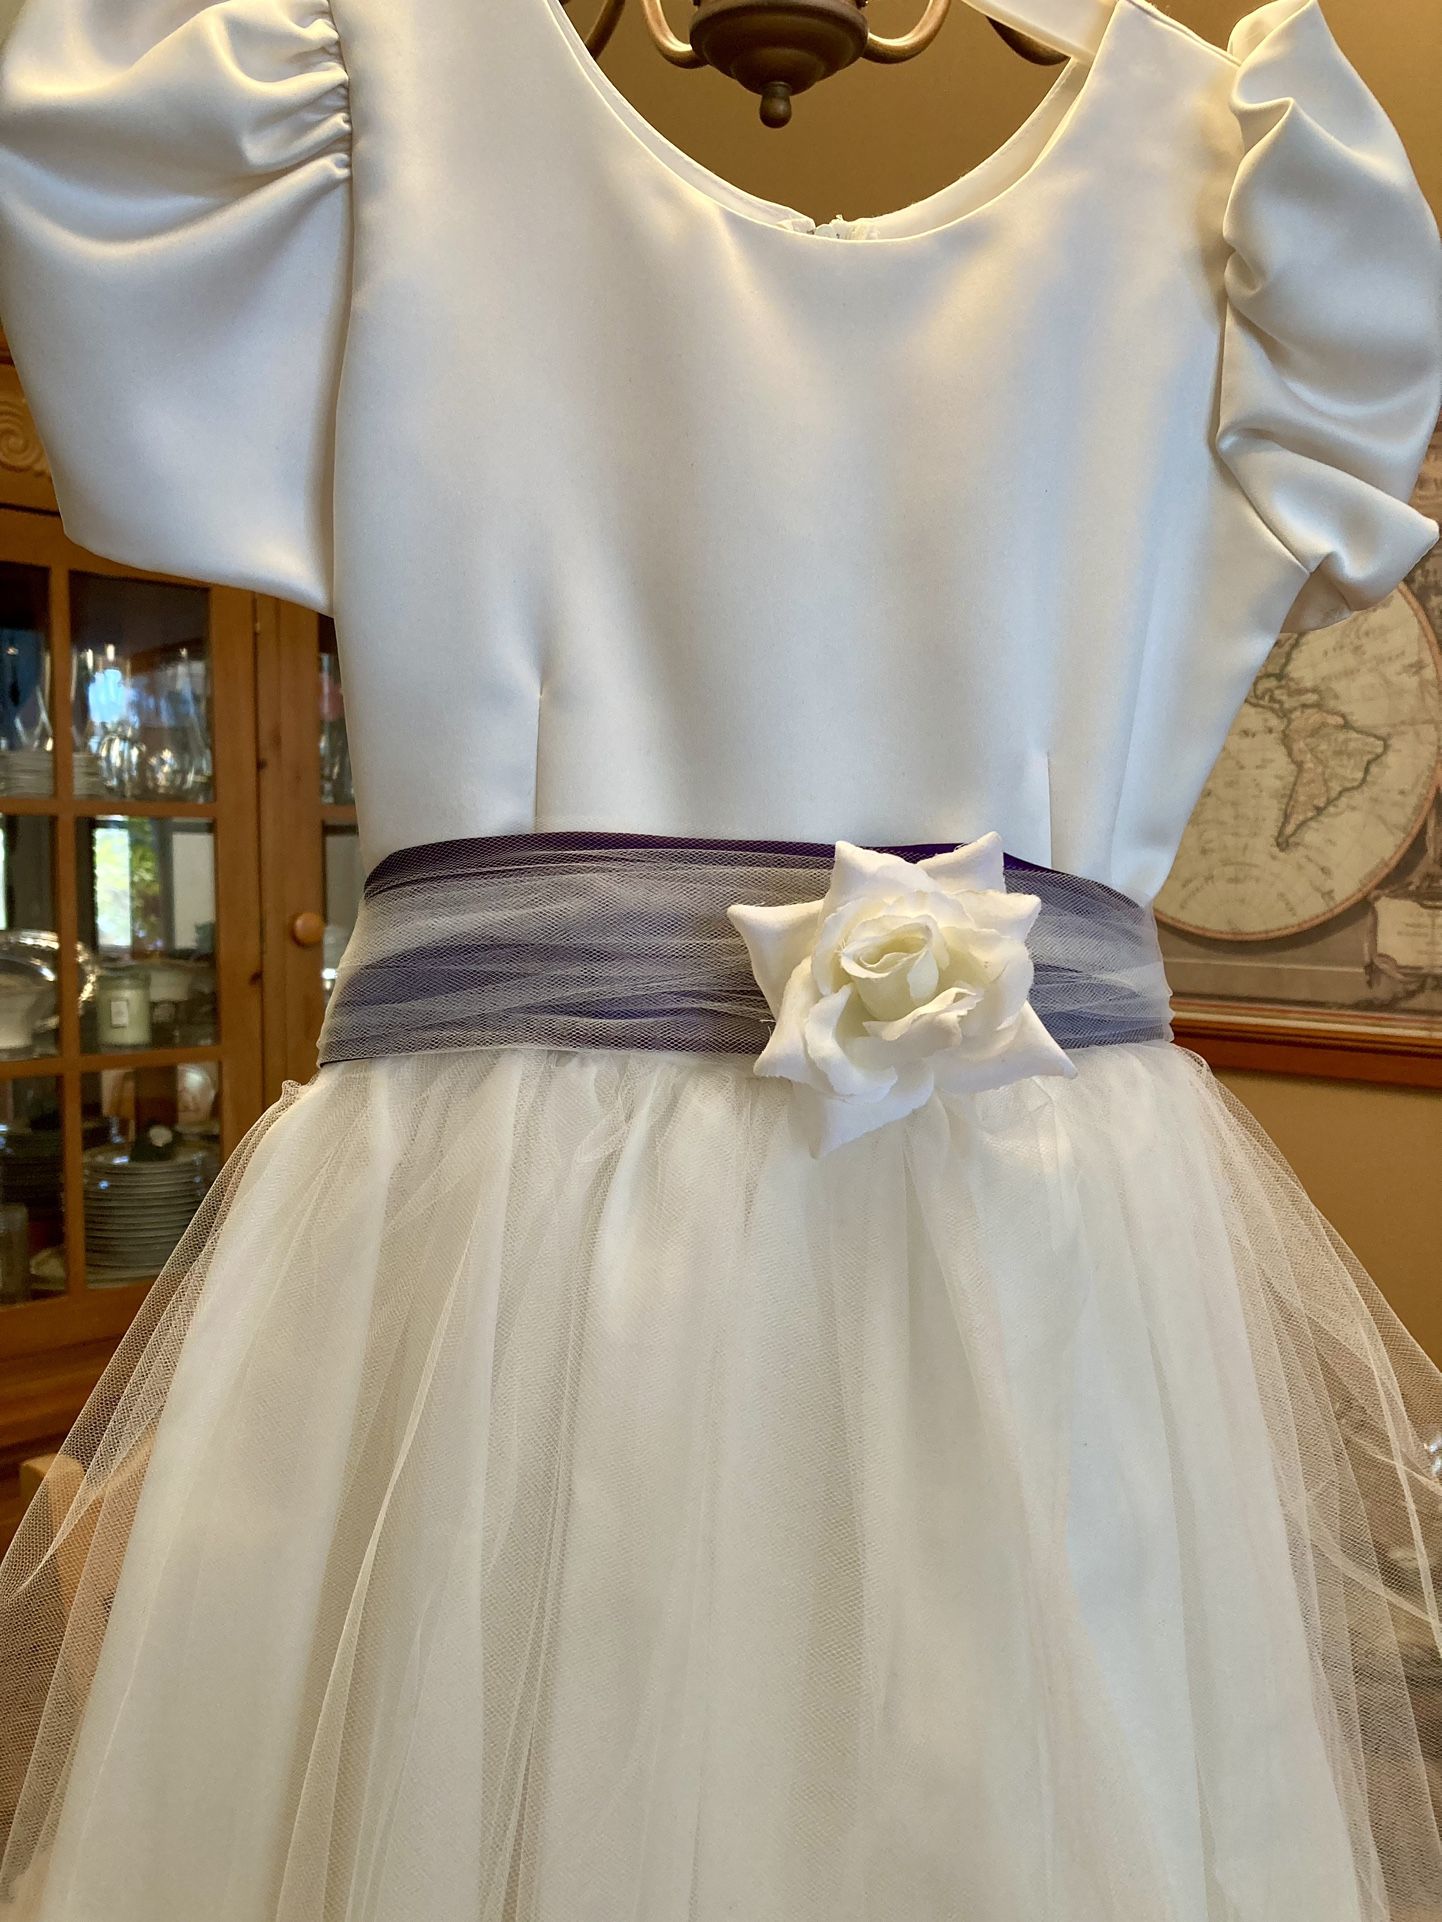 Dress- First Communion/Flower Girl Dress dress-